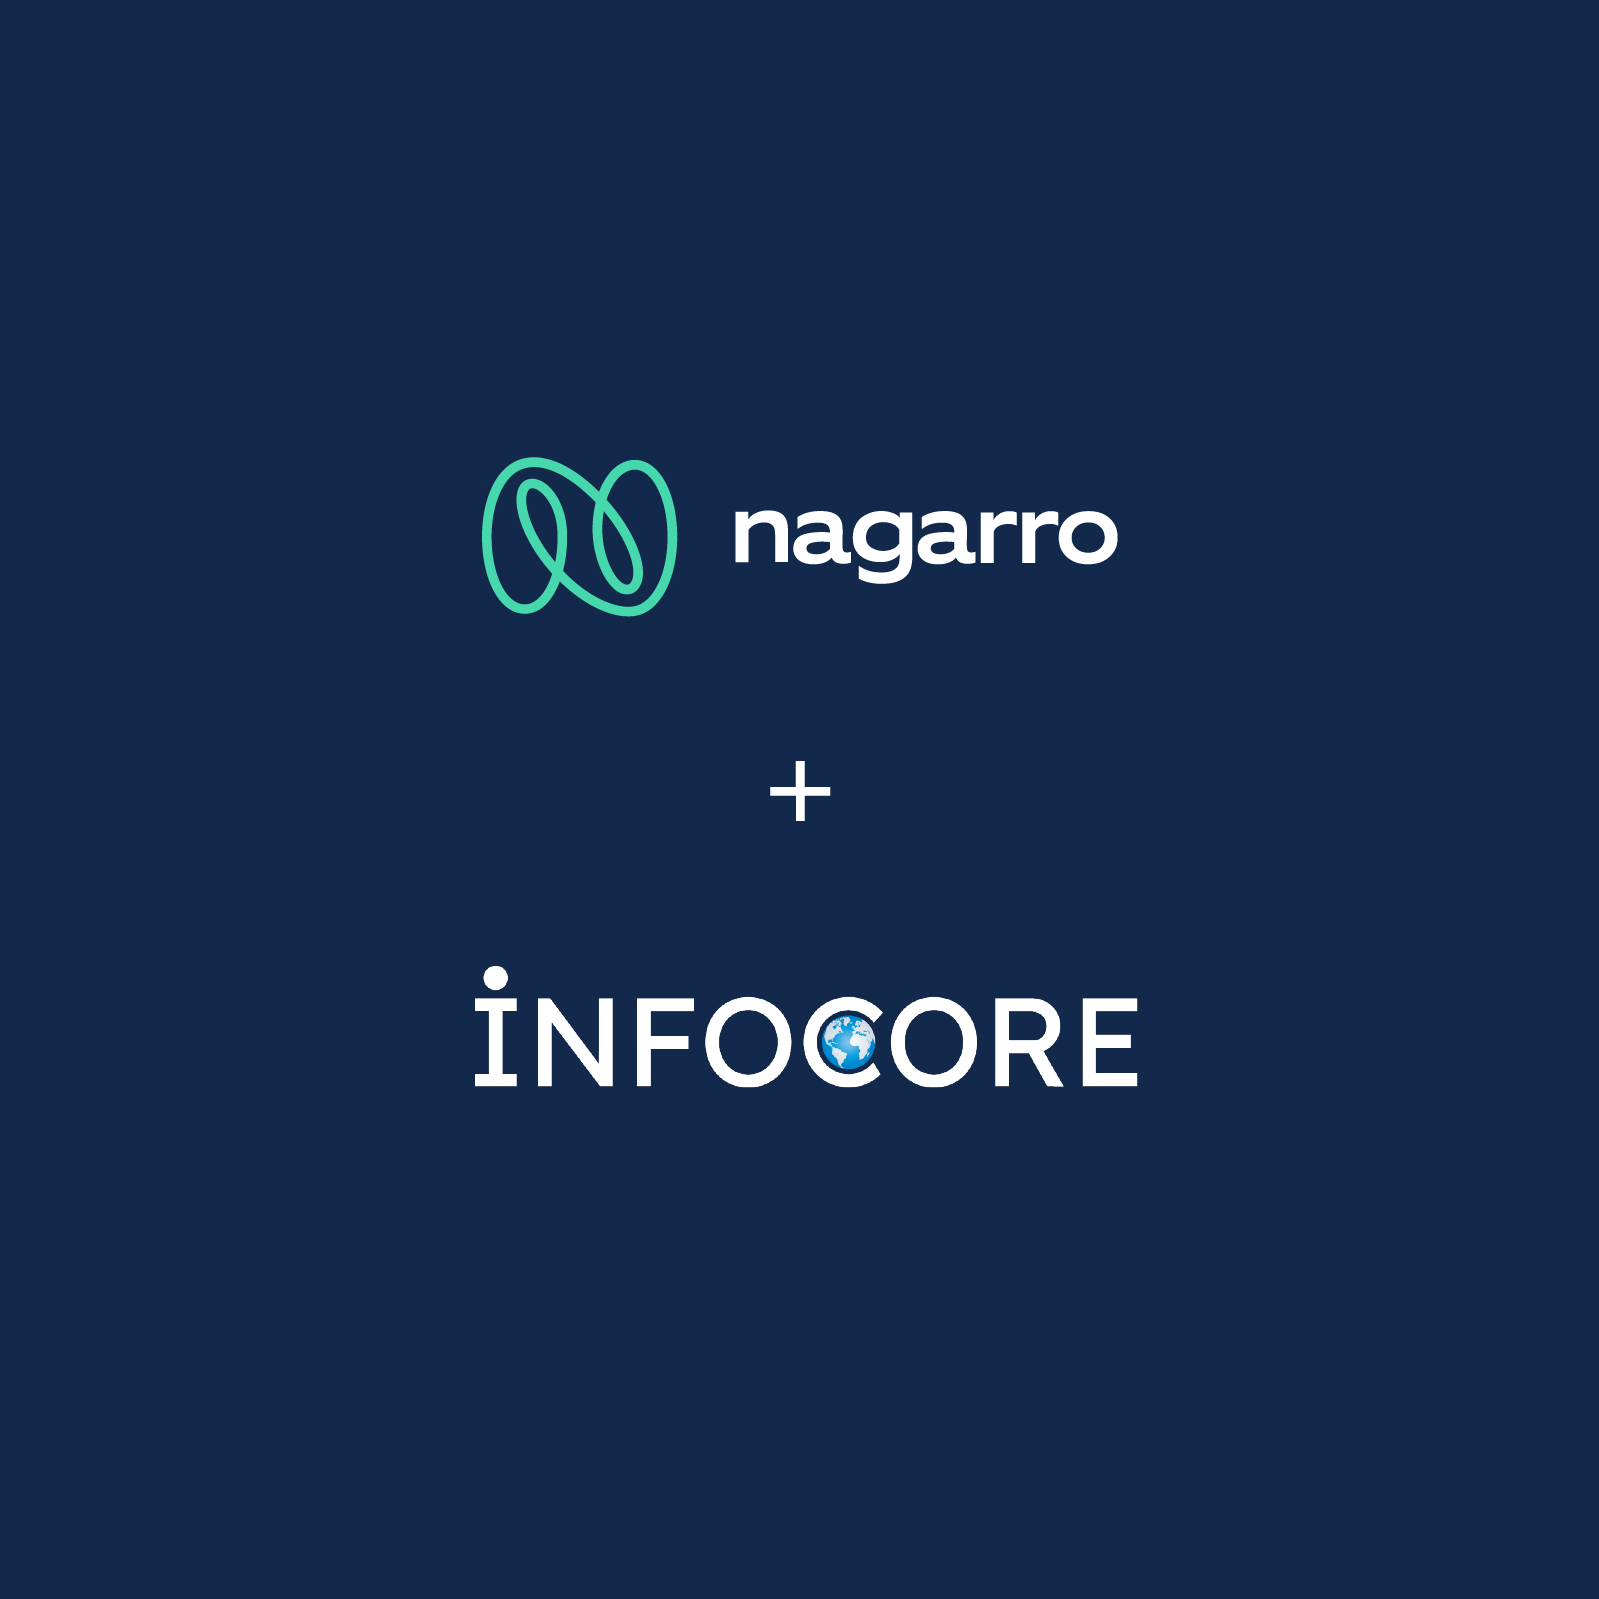 Nagarro erweitert mit der Akquisition der Infocore-Gruppe das Angebot für Industrie 4.0